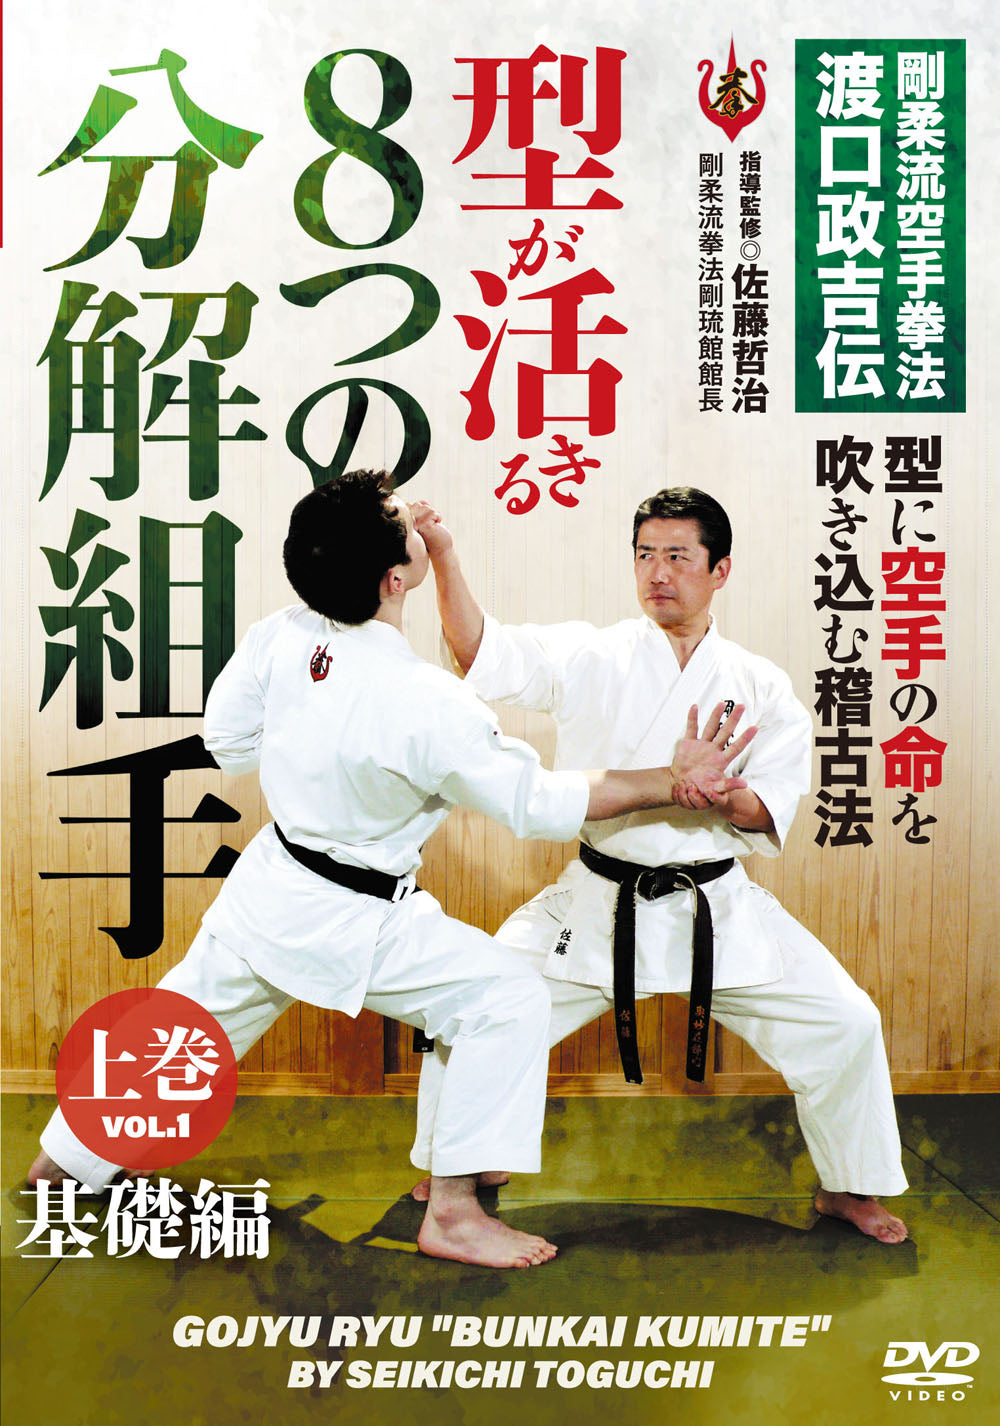 Goju Ryu Bunkai Kumite DVD by Tetsuji Sato